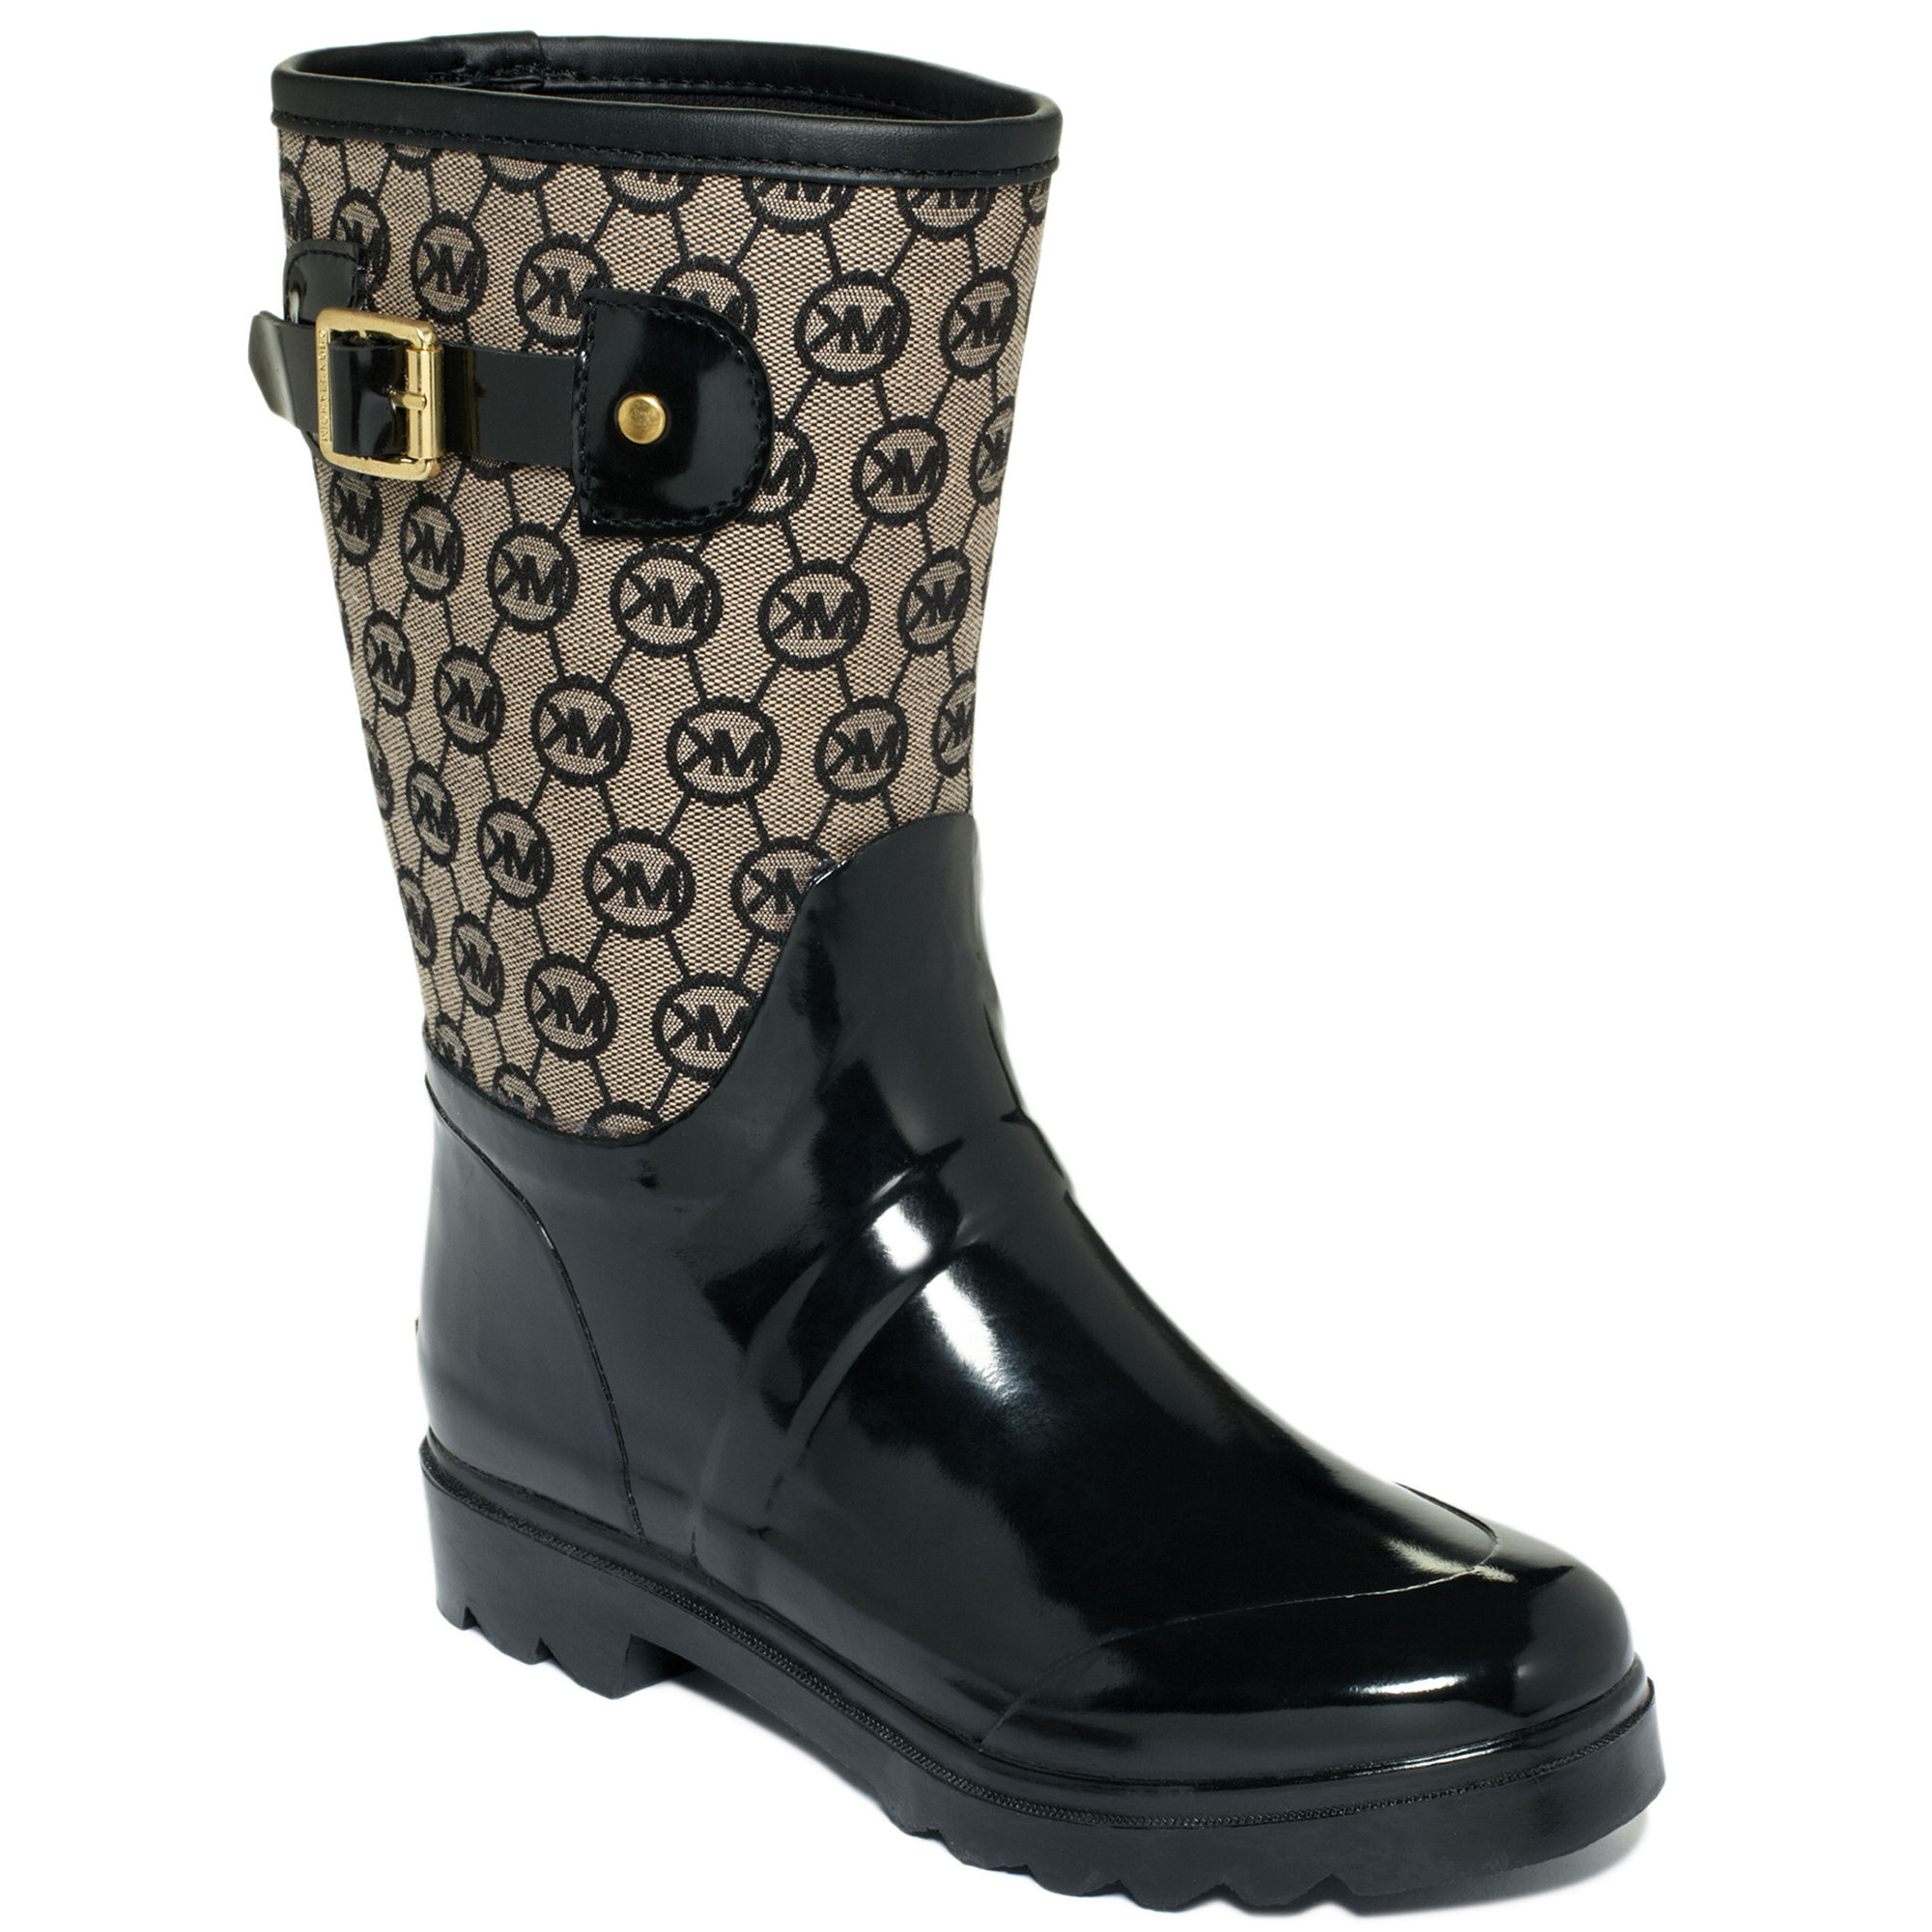 mk rain boots canada